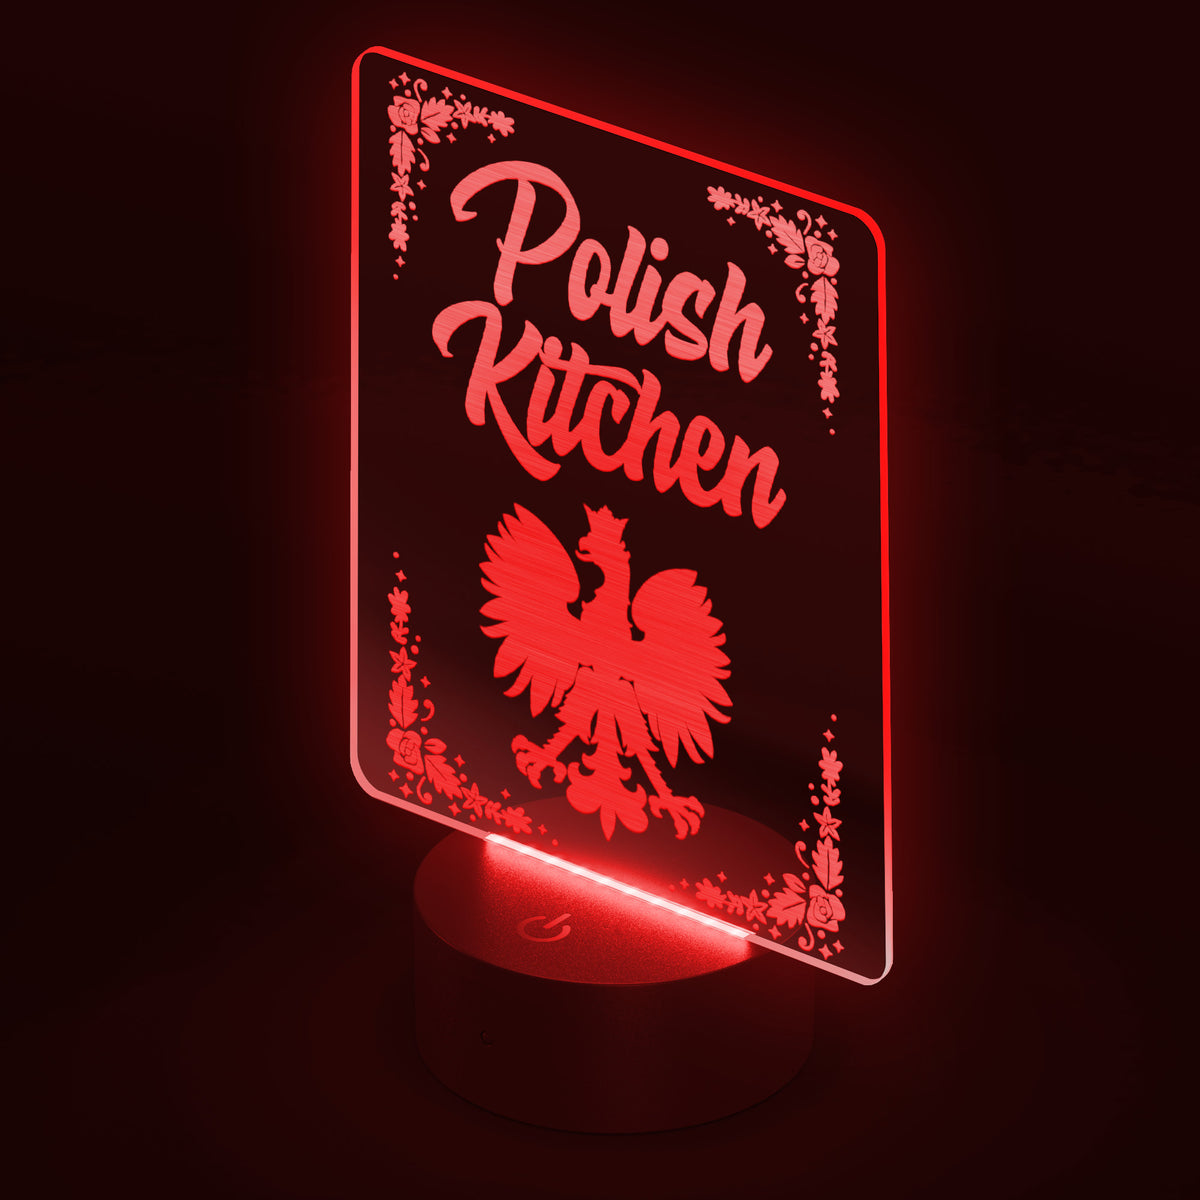 Polish Kitchen Rectangle Acrylic LED Sign LED Signs teelaunch   